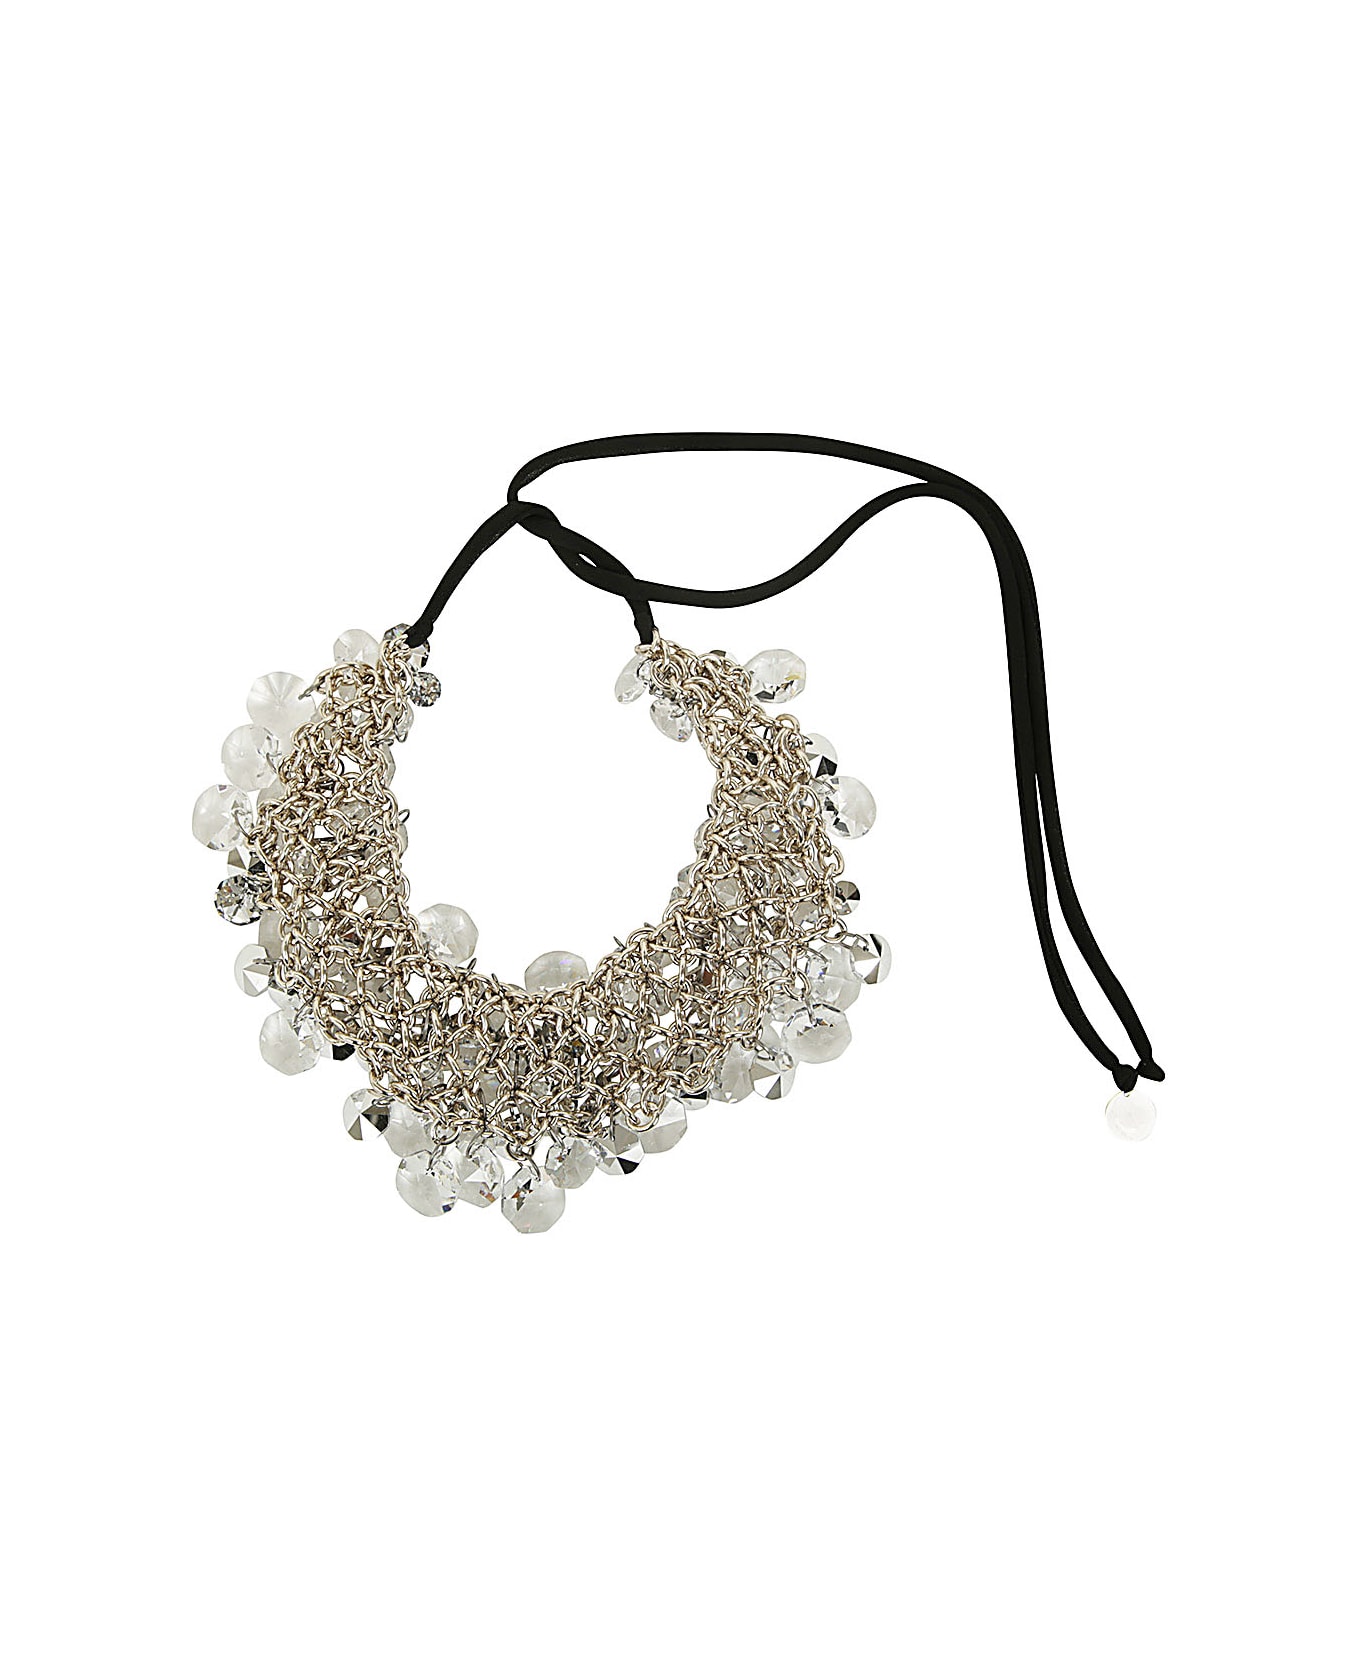 Maria Calderara Crystals And Diamonds Necklace - Tl Trasparent